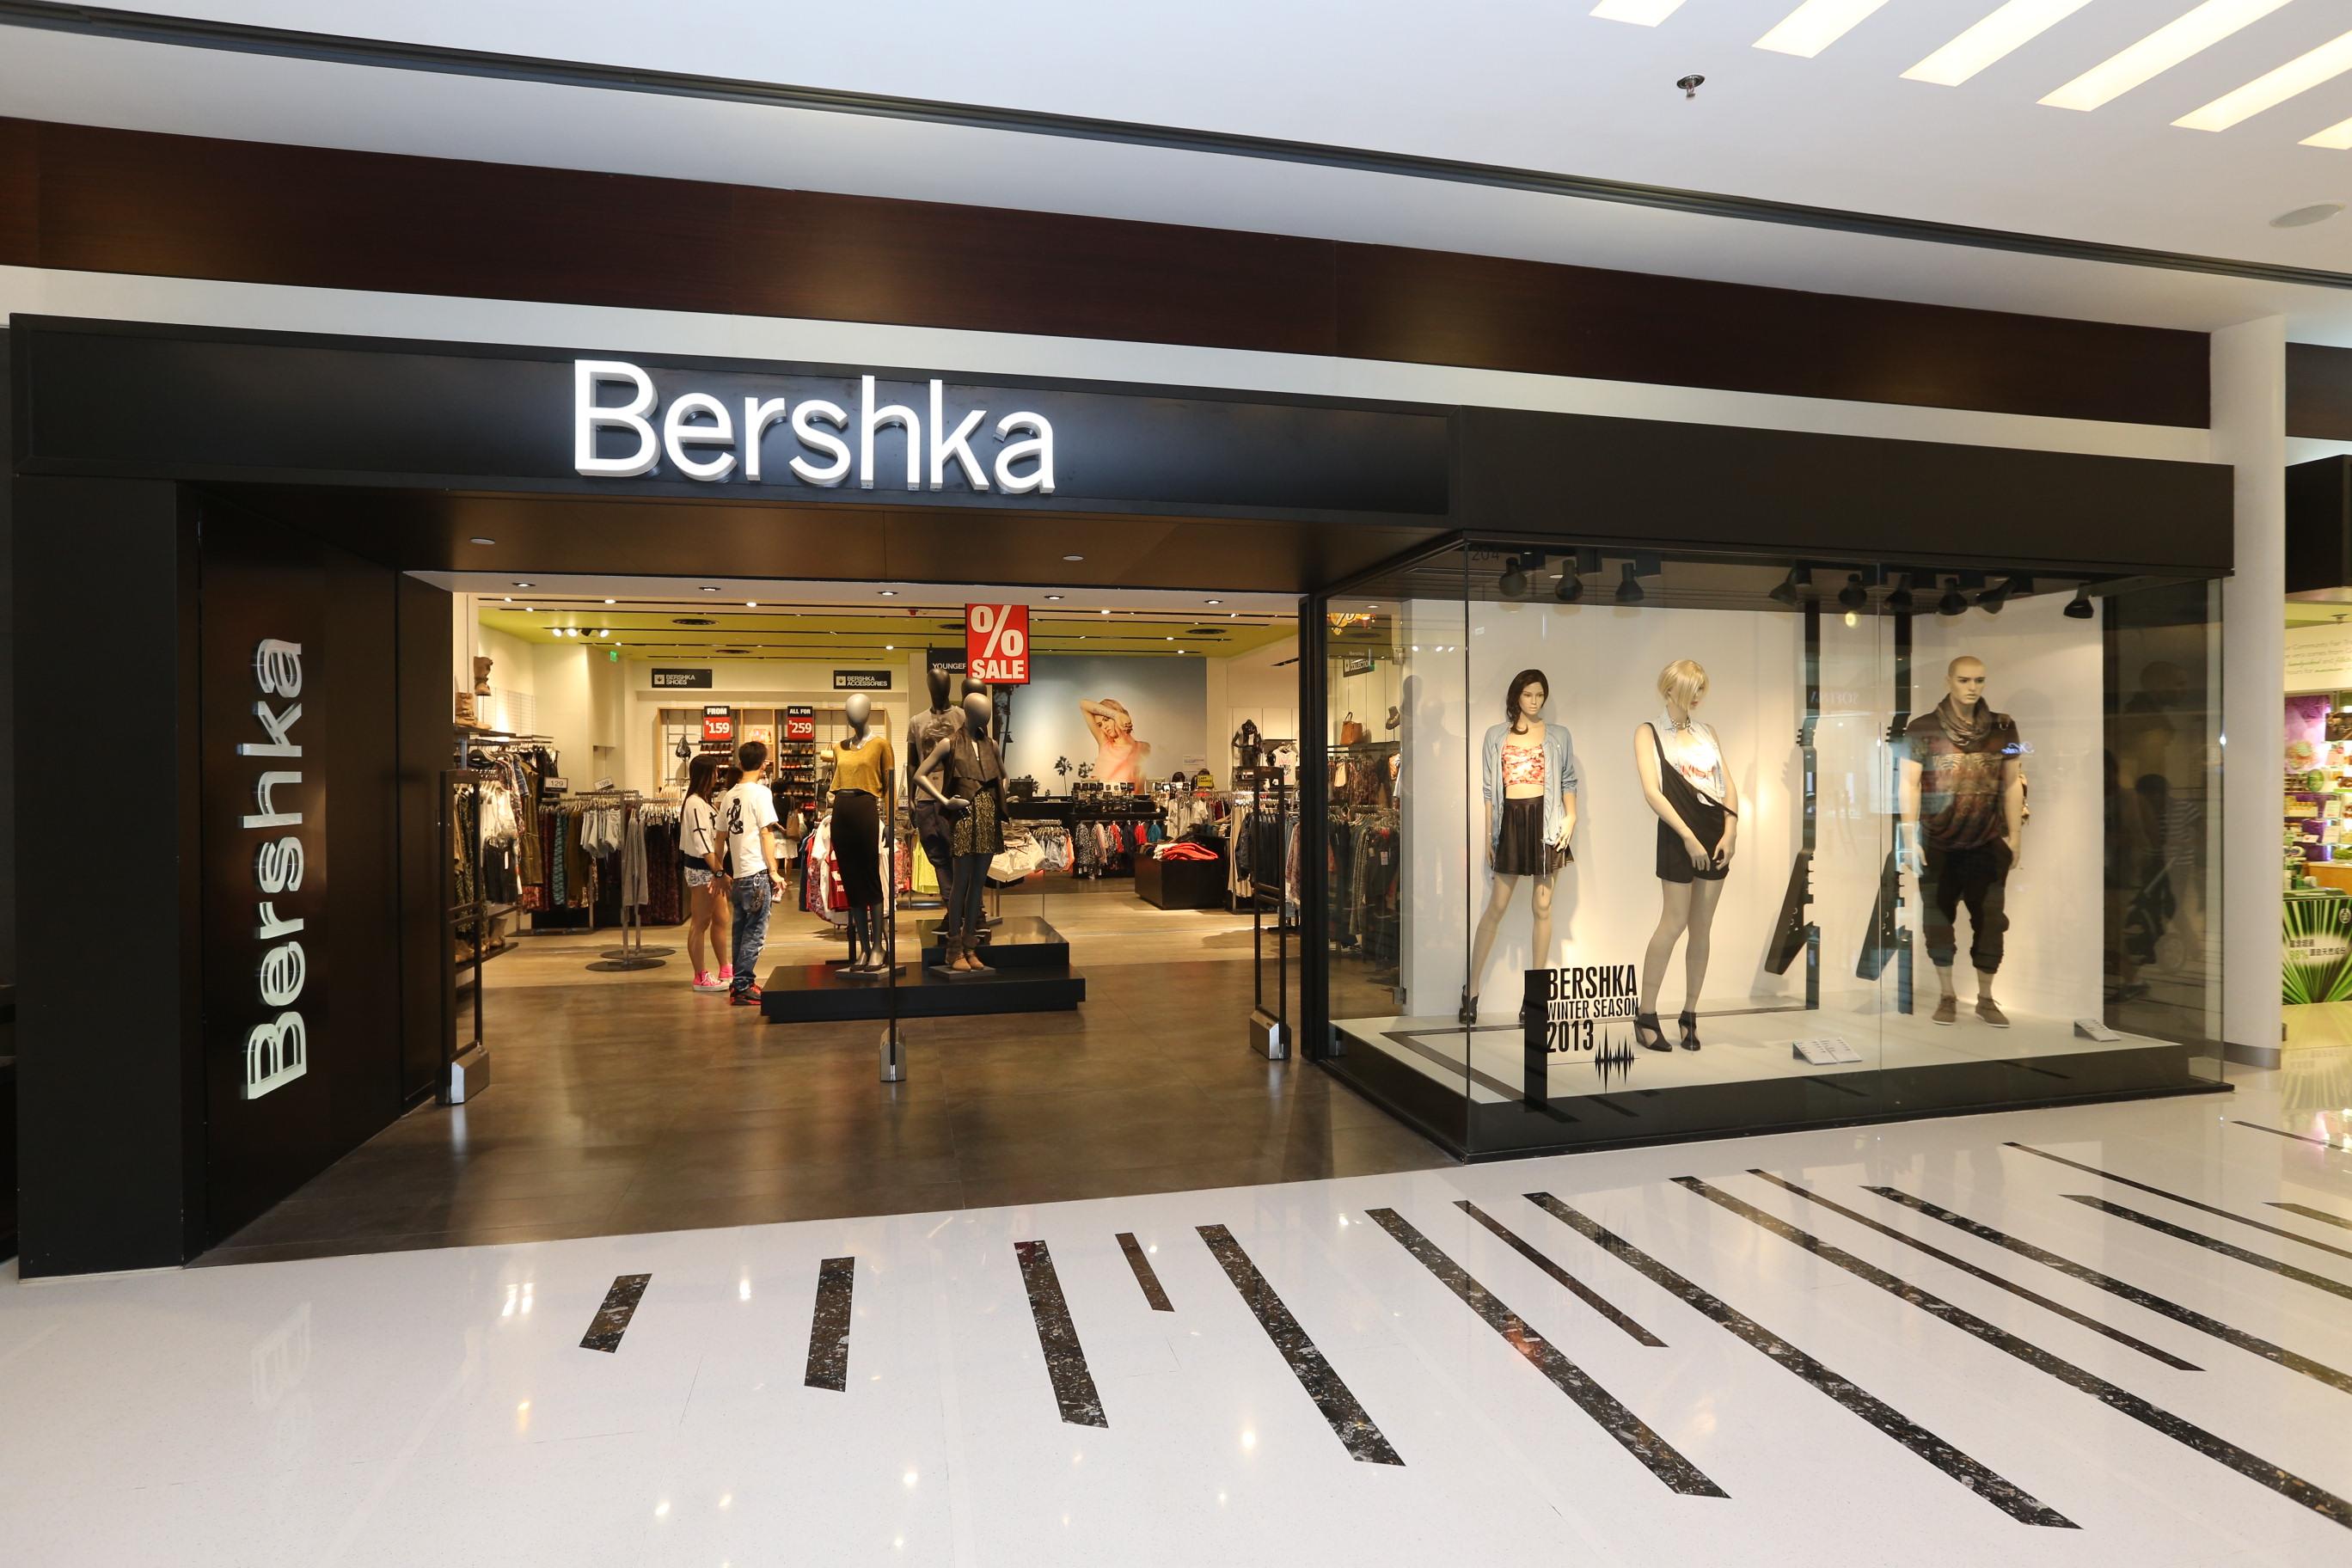 Bershka Интернет Магазин Одежды Официальный Сайт